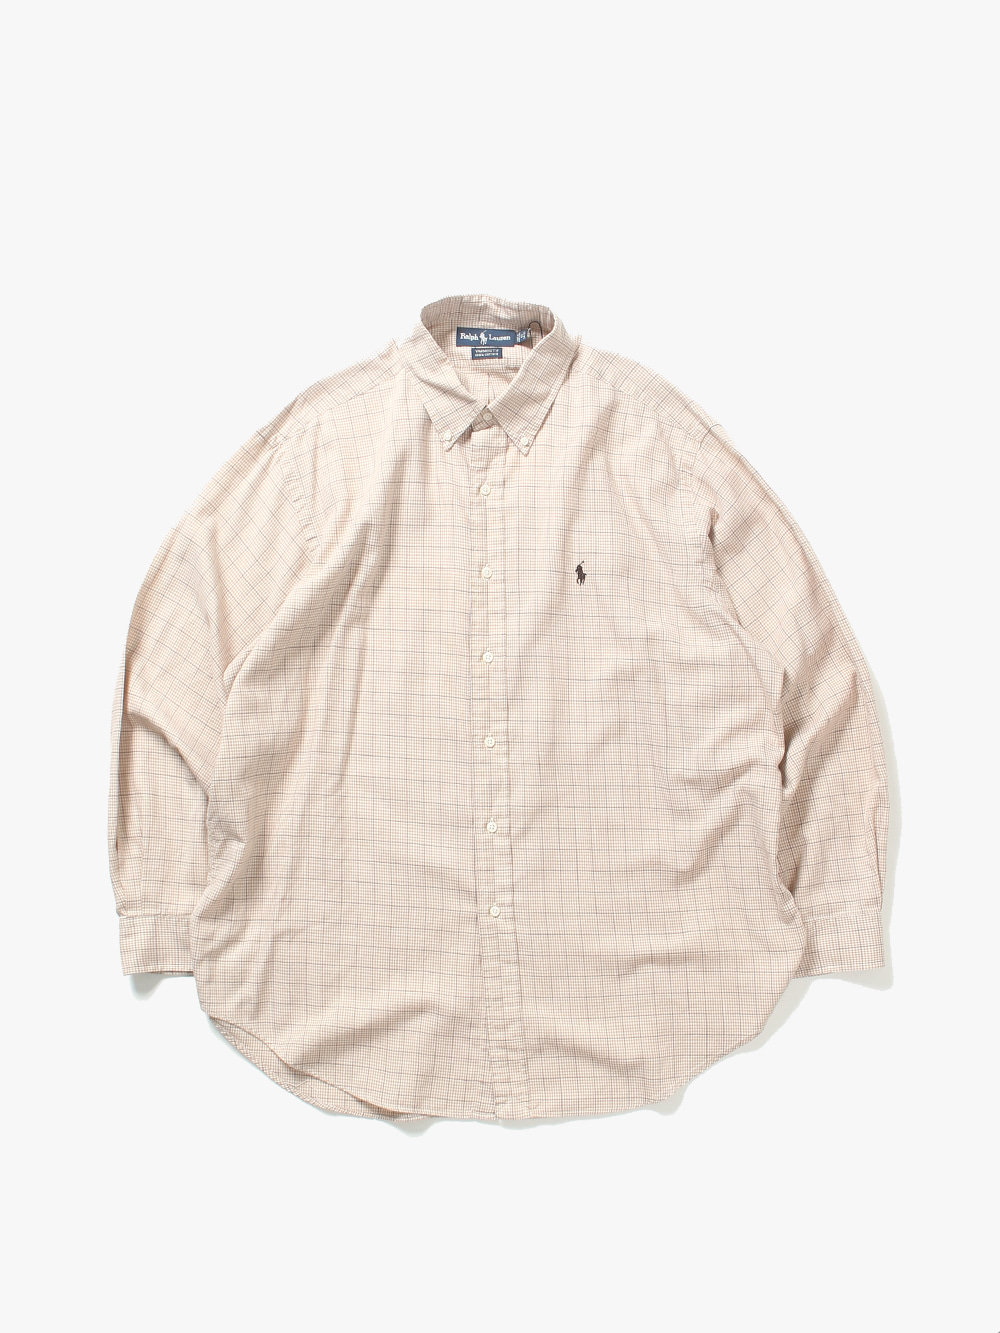 [105  ] Polo Ralph Lauren Shirt (6471)